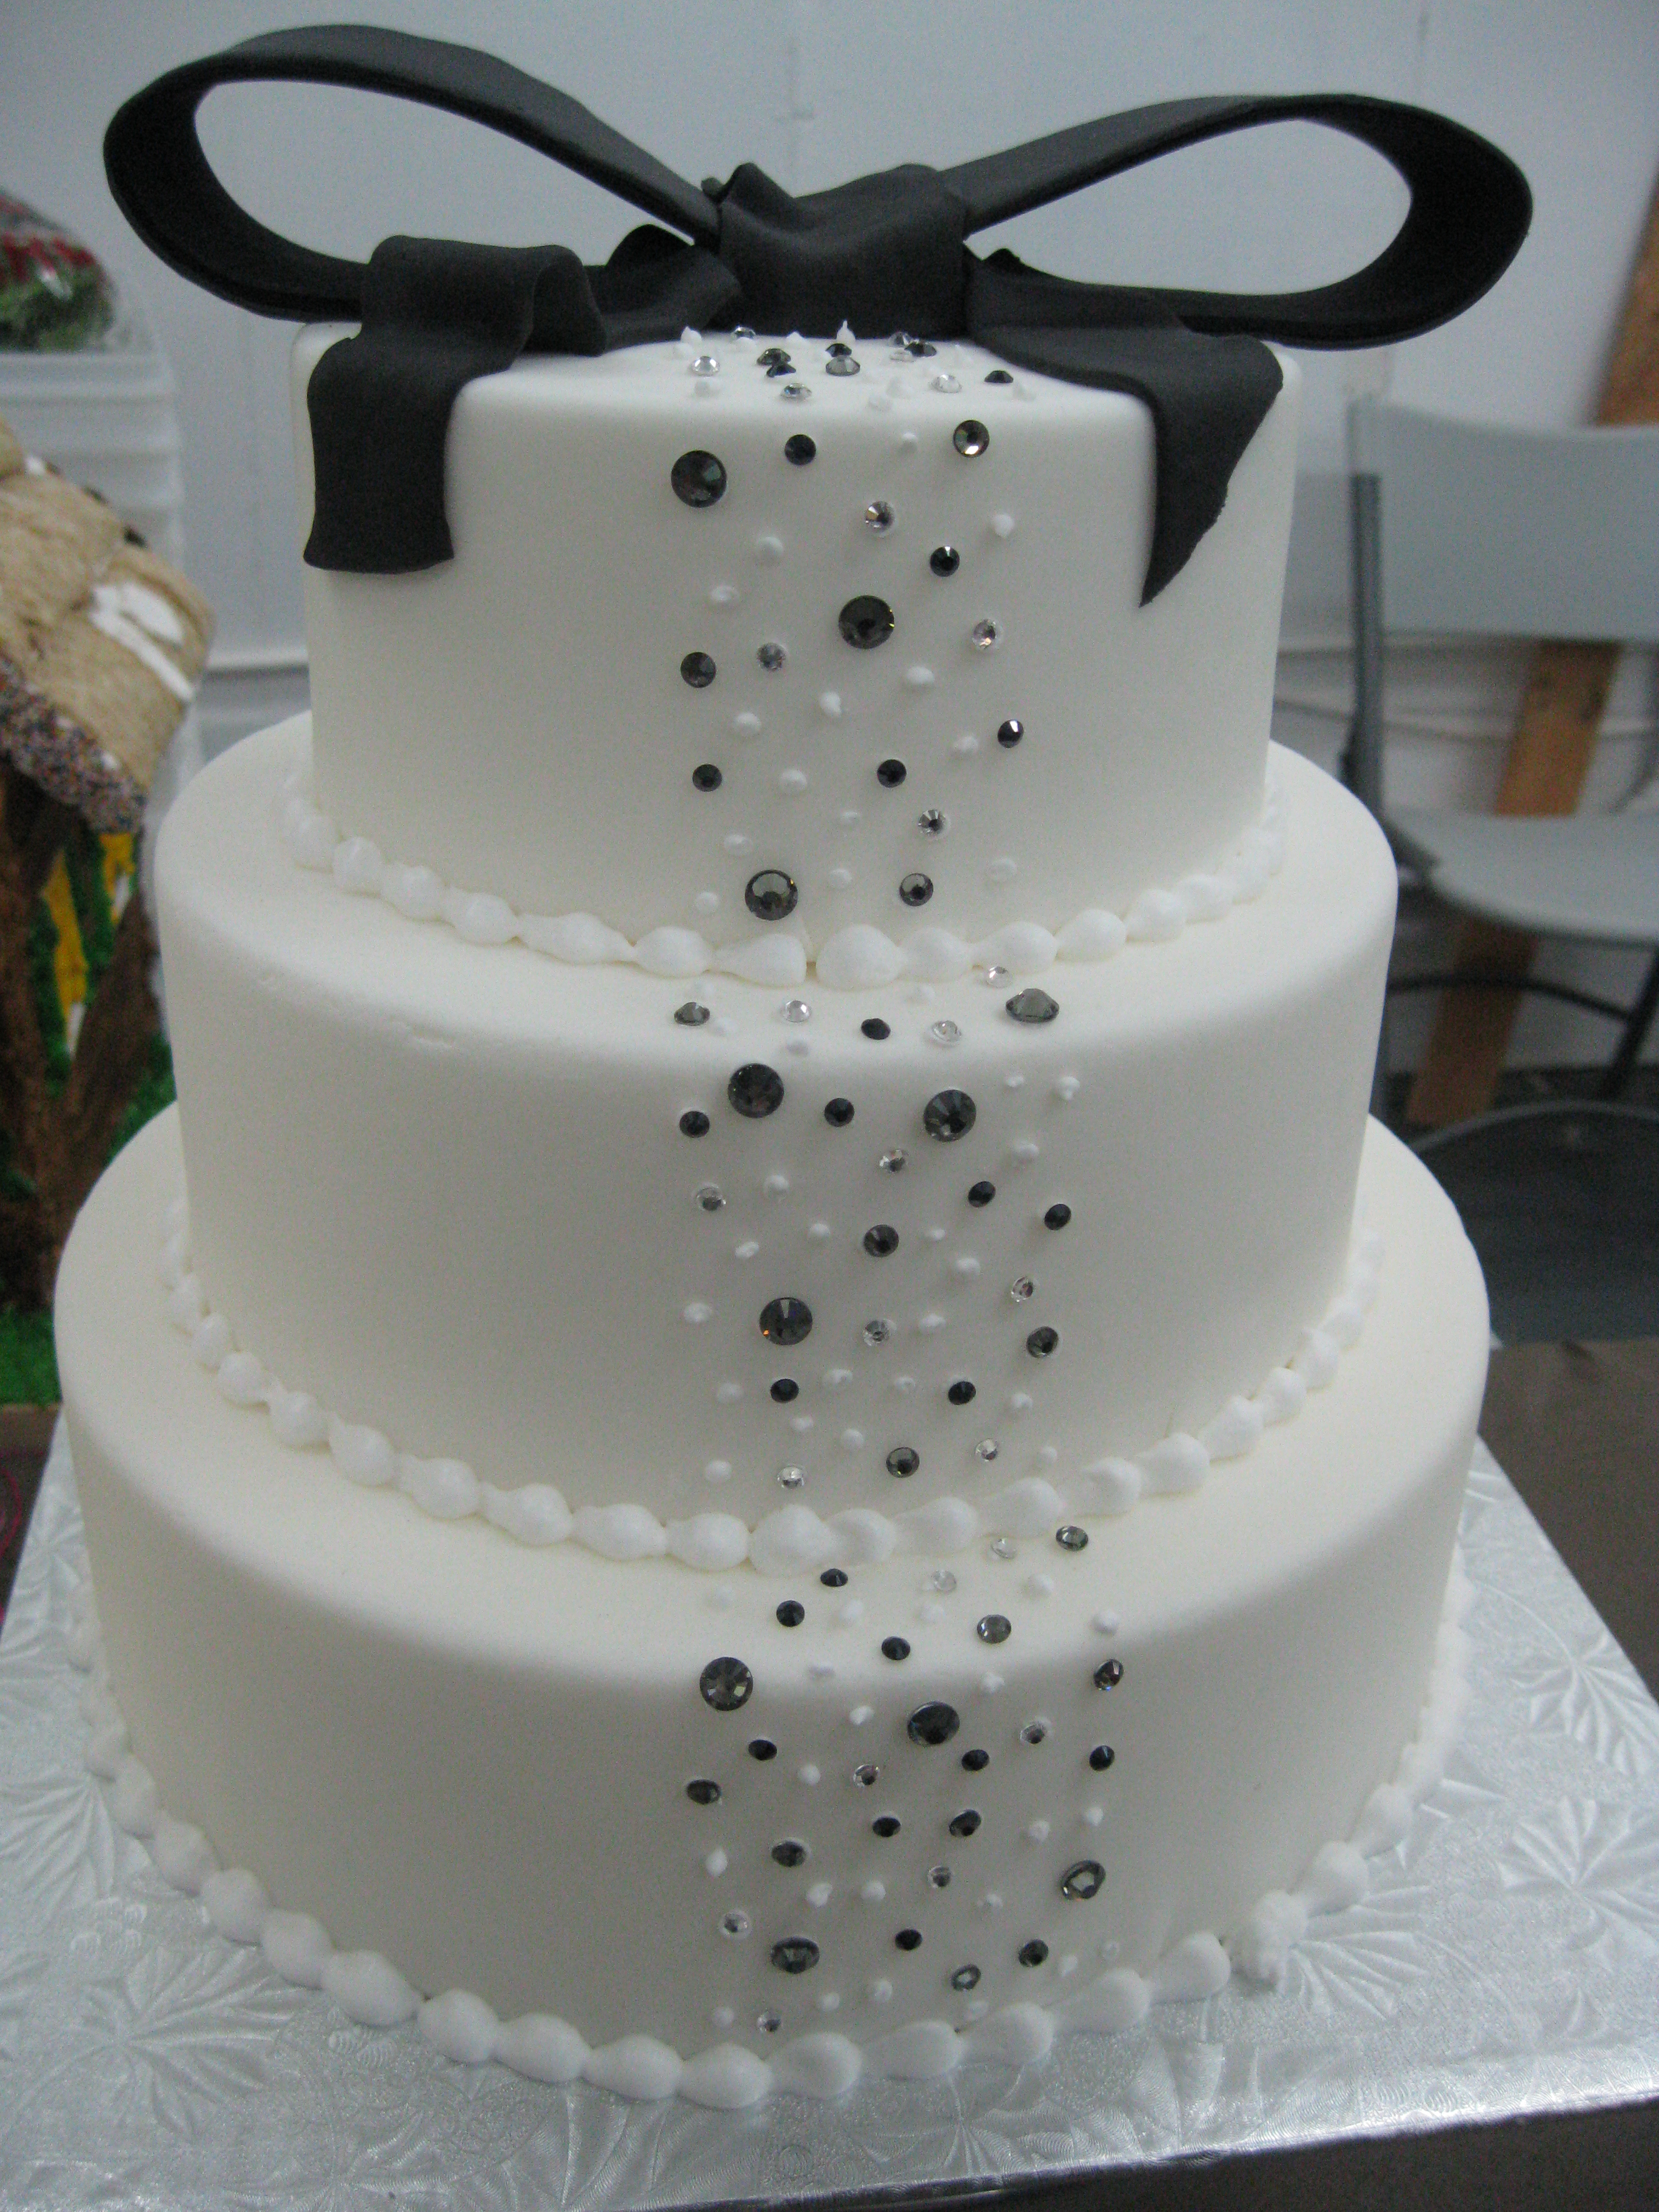 turquoise wedding cake